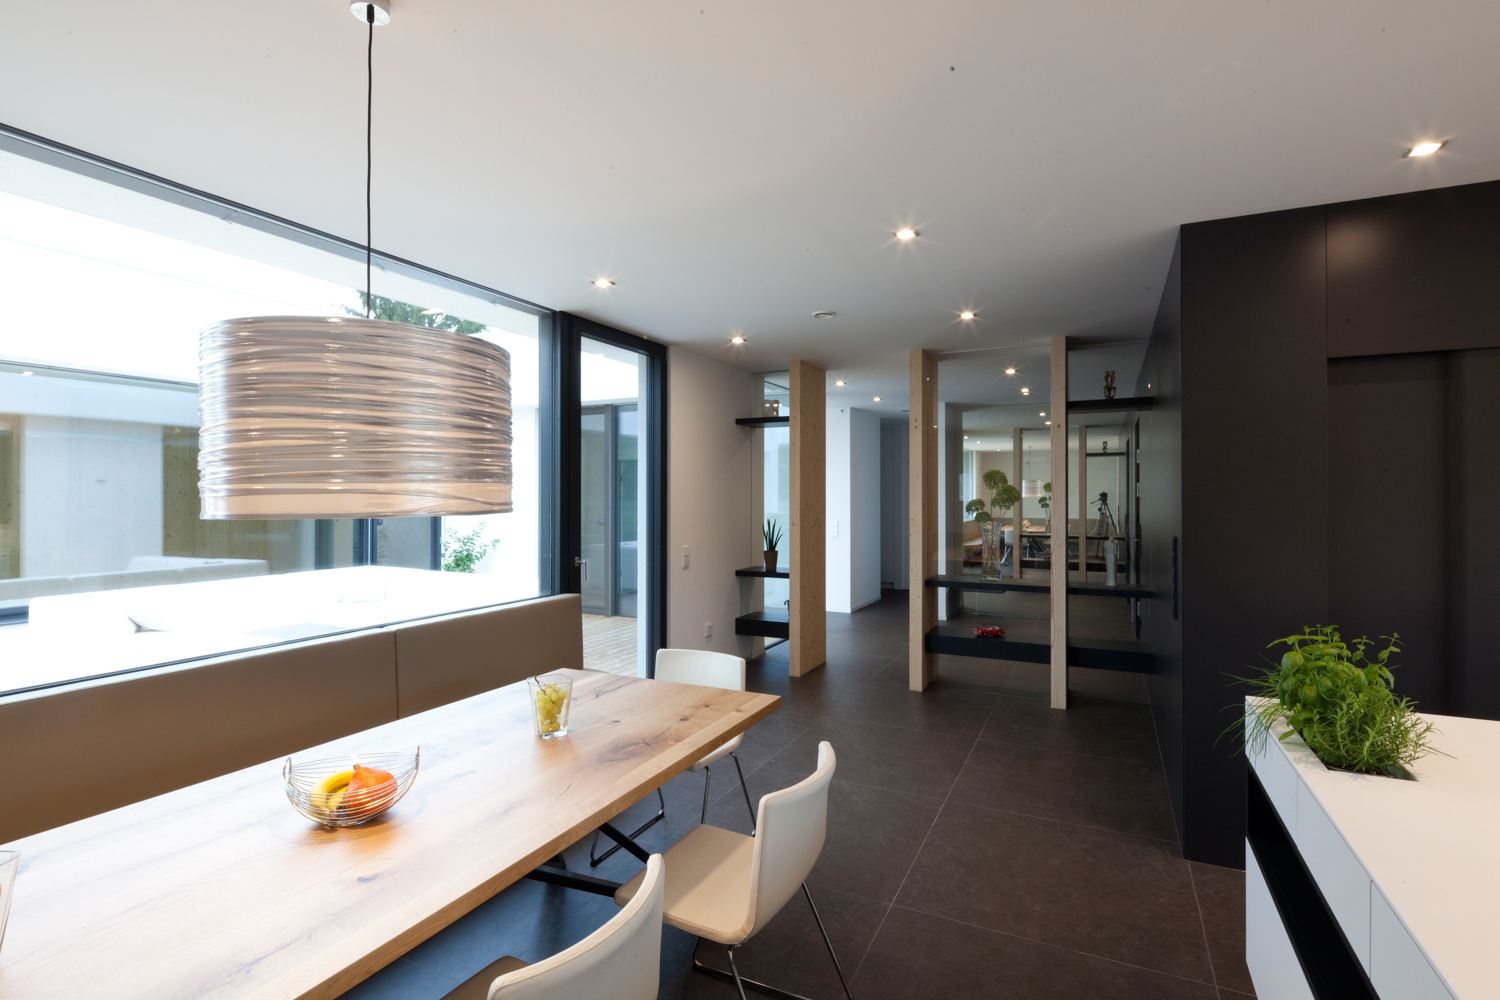 Integrierte Möbelplanung (Küche, Essbereich) eines Bungalows der von Architekten geplant wurde